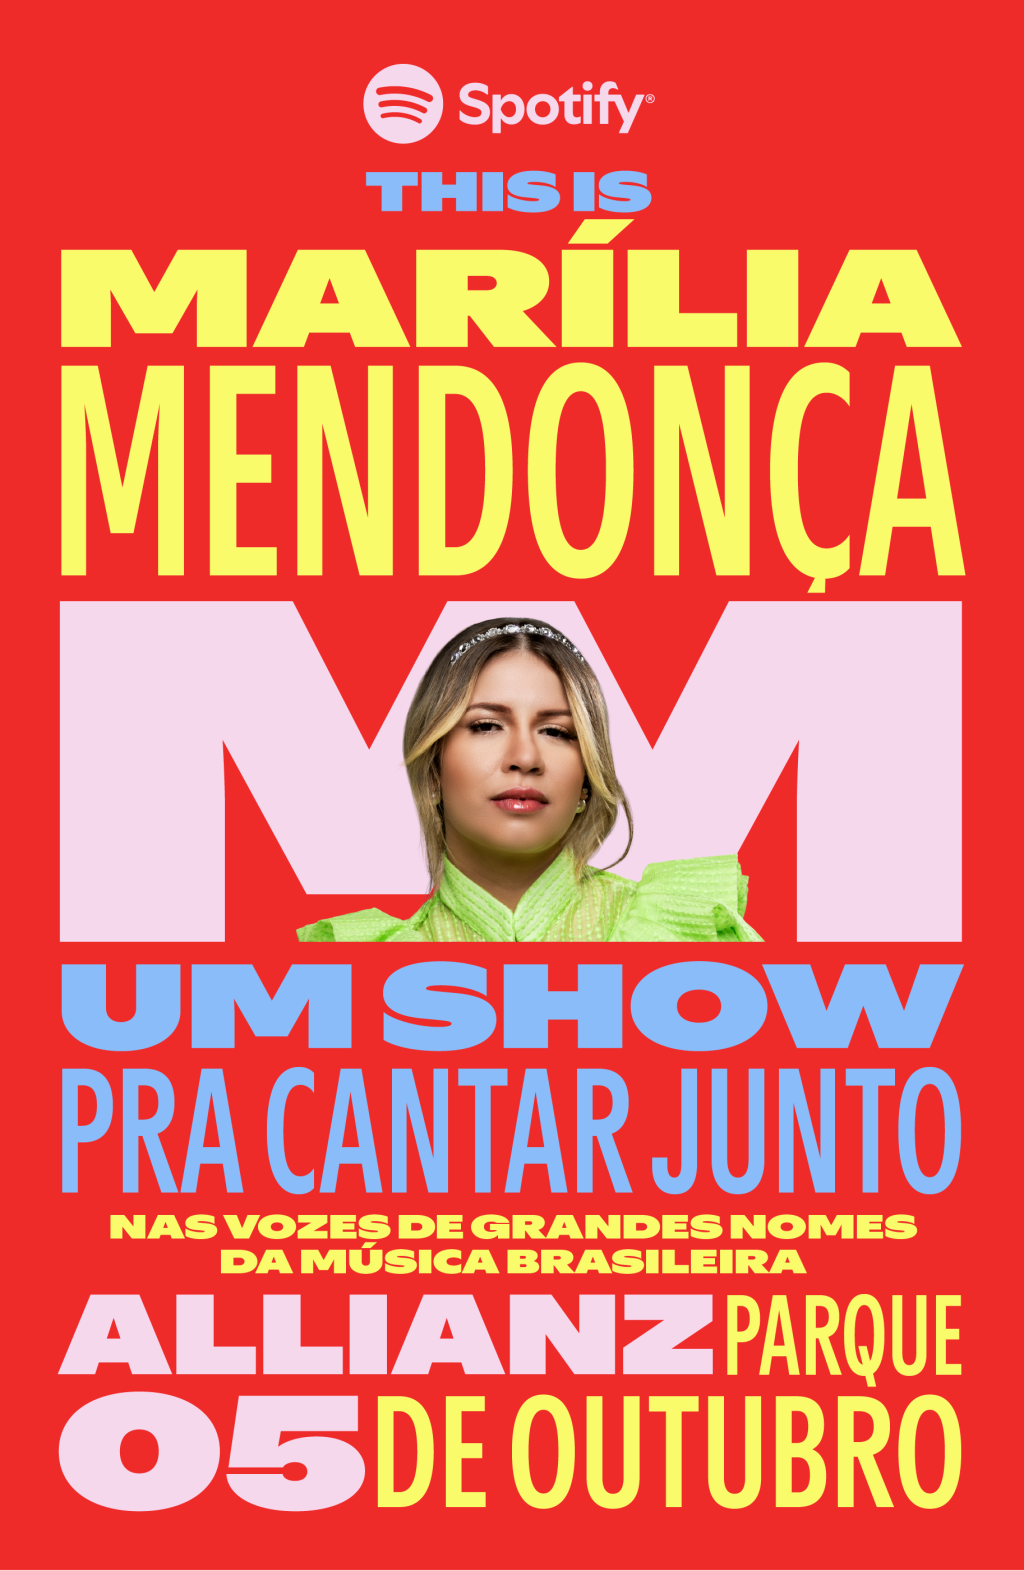 Cartaz do festival This Is Marília Mendonça, do Spotify